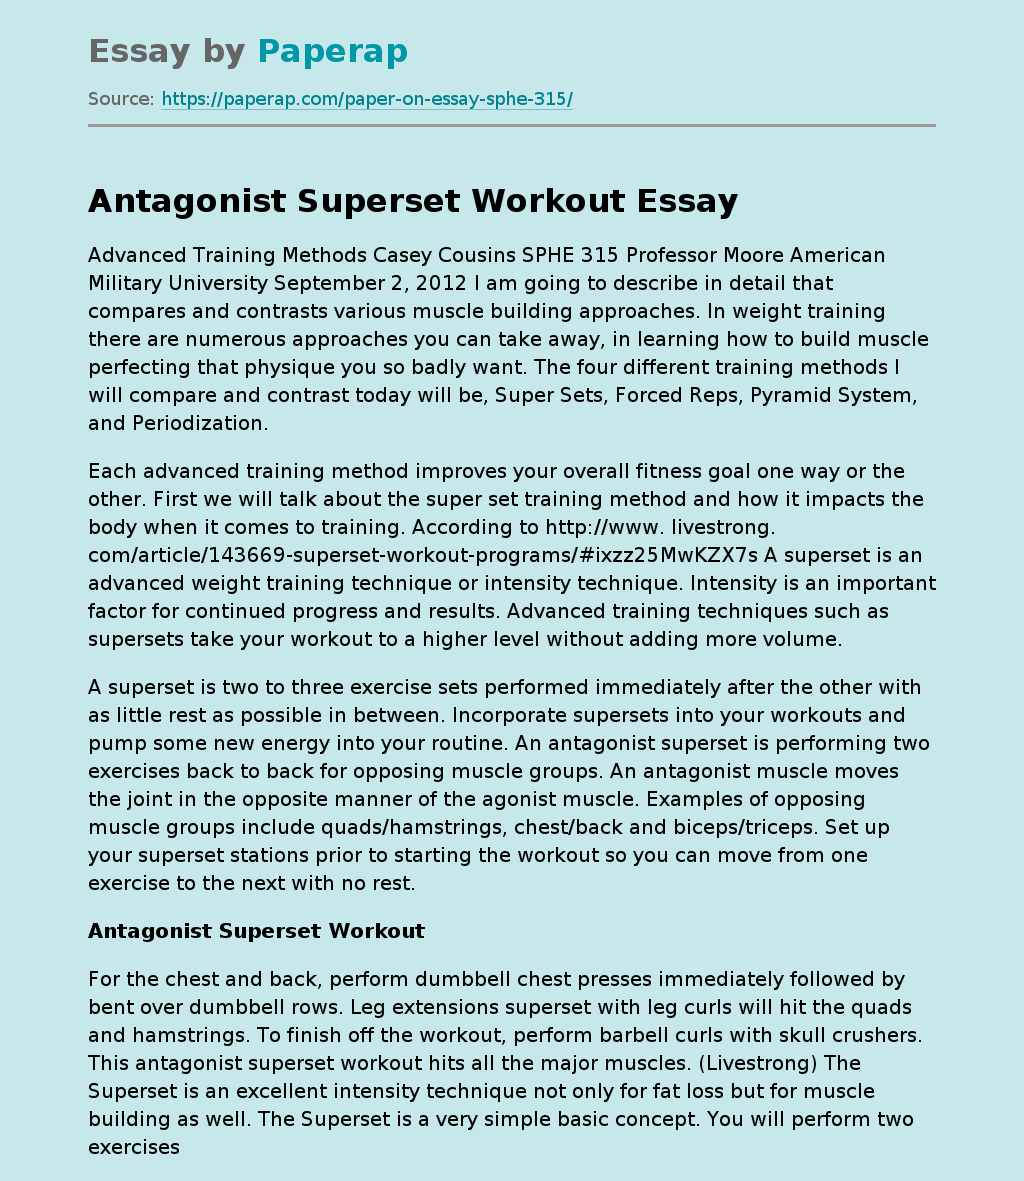 Antagonist Superset Workout